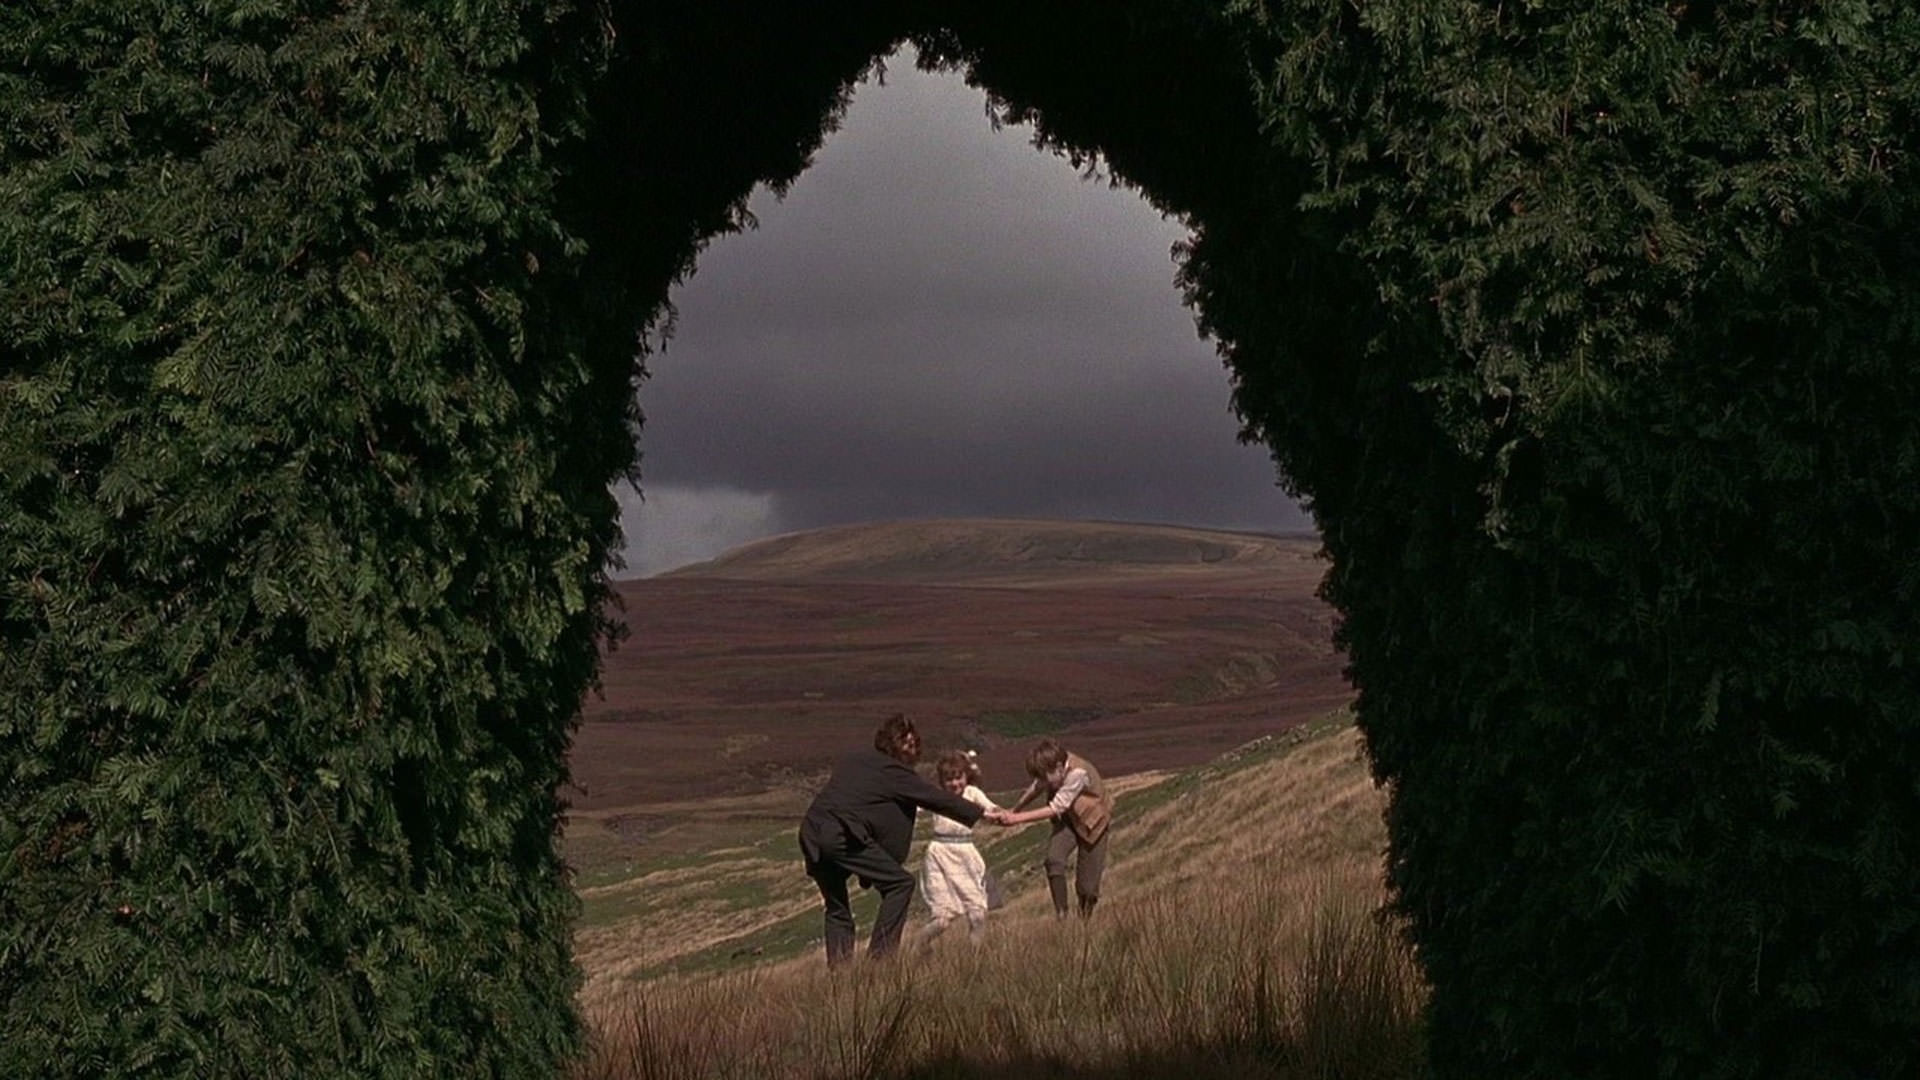 منظره‌ای از طبیعت انگلستان و دشت‌های وسیع و تپه‌های بزرگ از مجرای یک پرچین در حالی که یک مرد و دو کودک هم در دشت دیده می‌شوند در نمایی از فیلم باغ مخفی به کارگردانی آگنیشکا هولاند